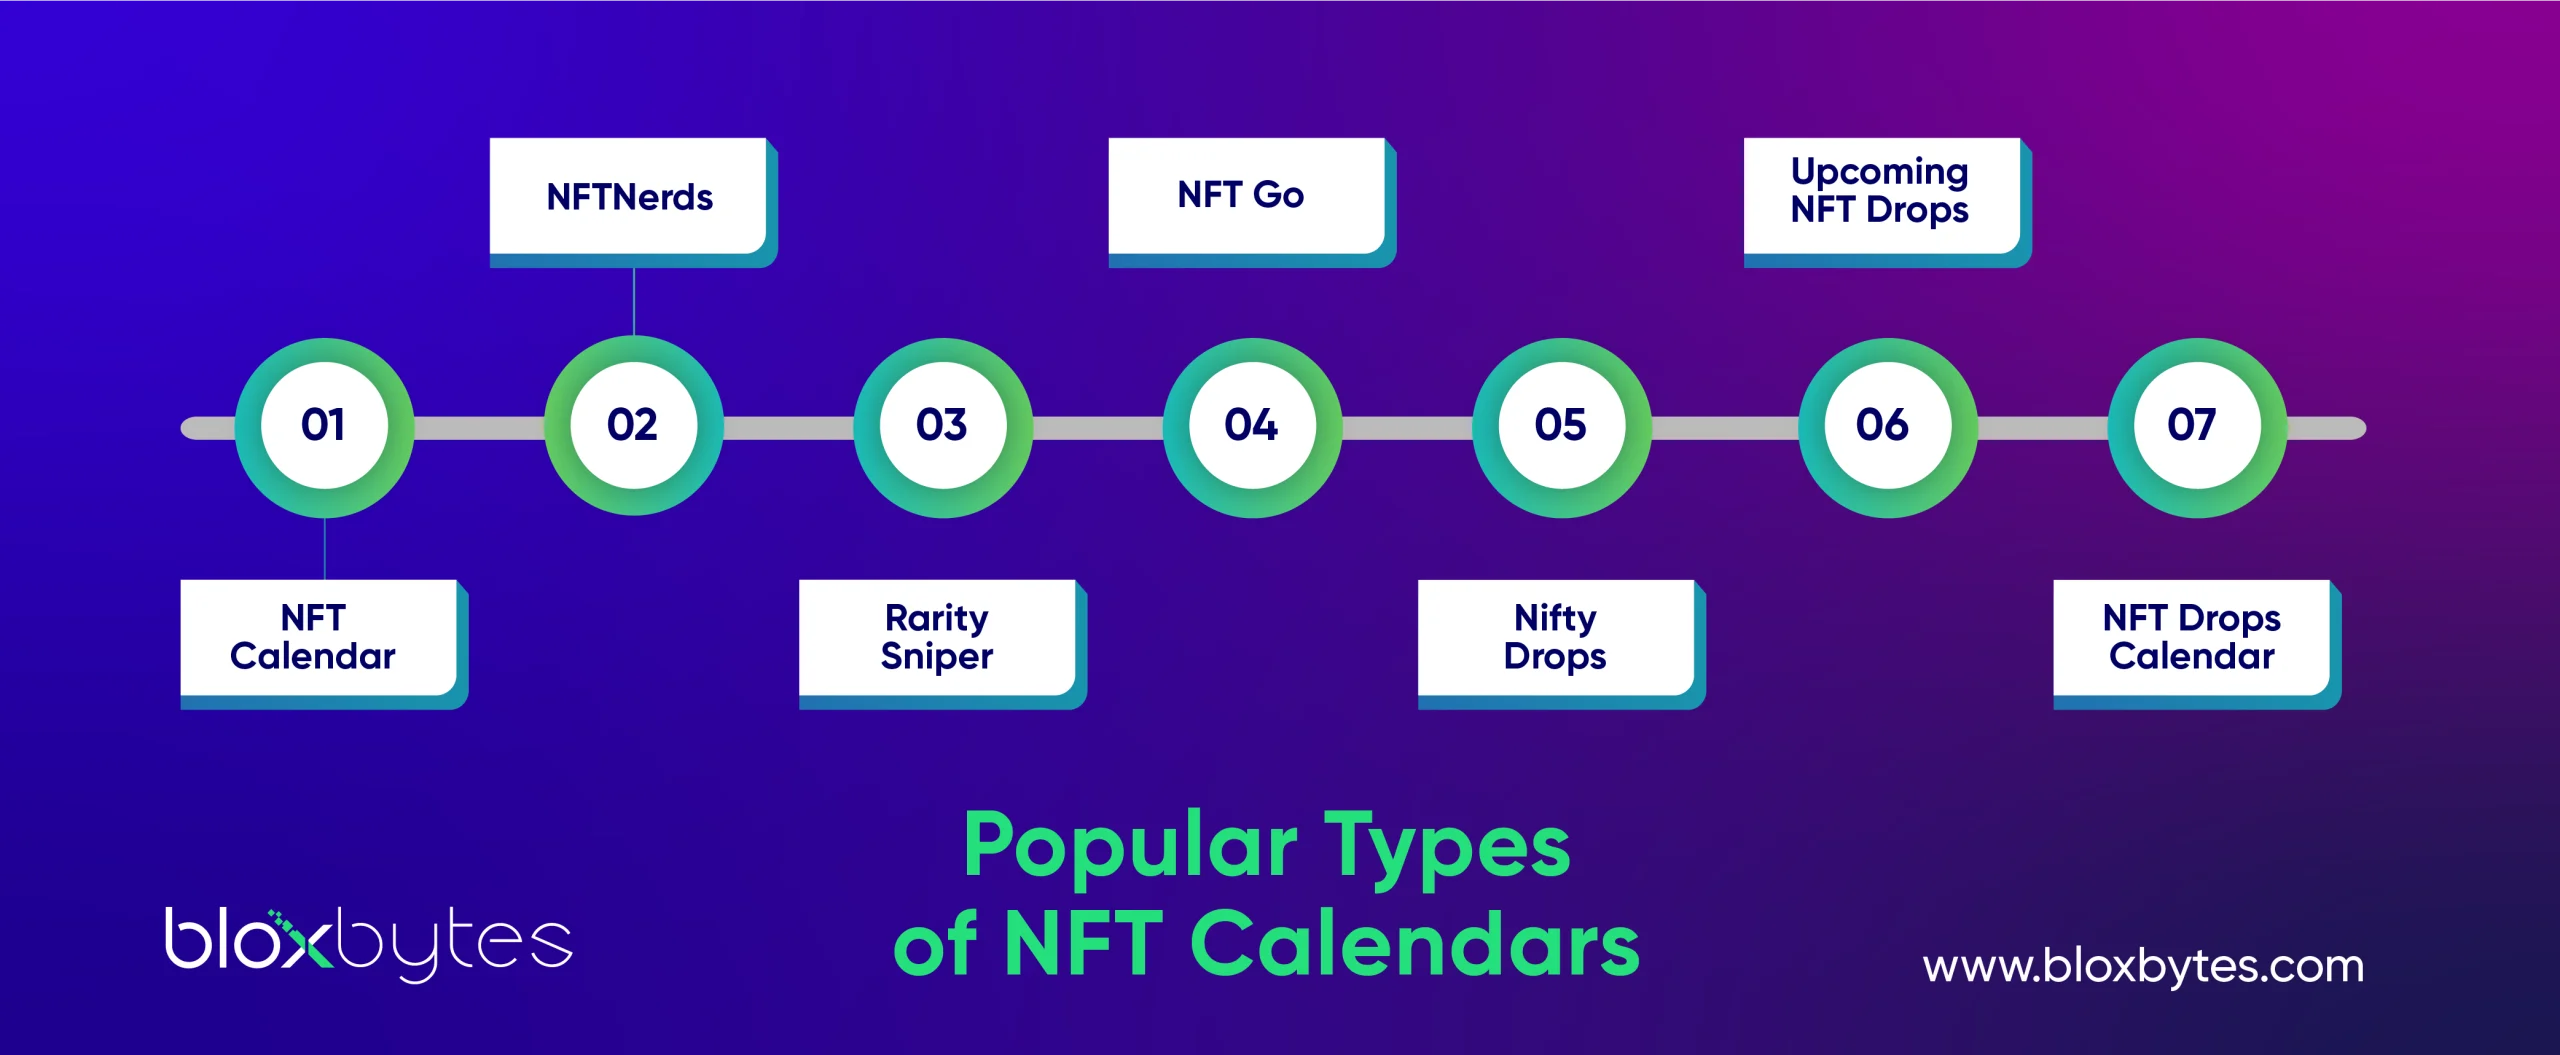 NFT Drop Calendars